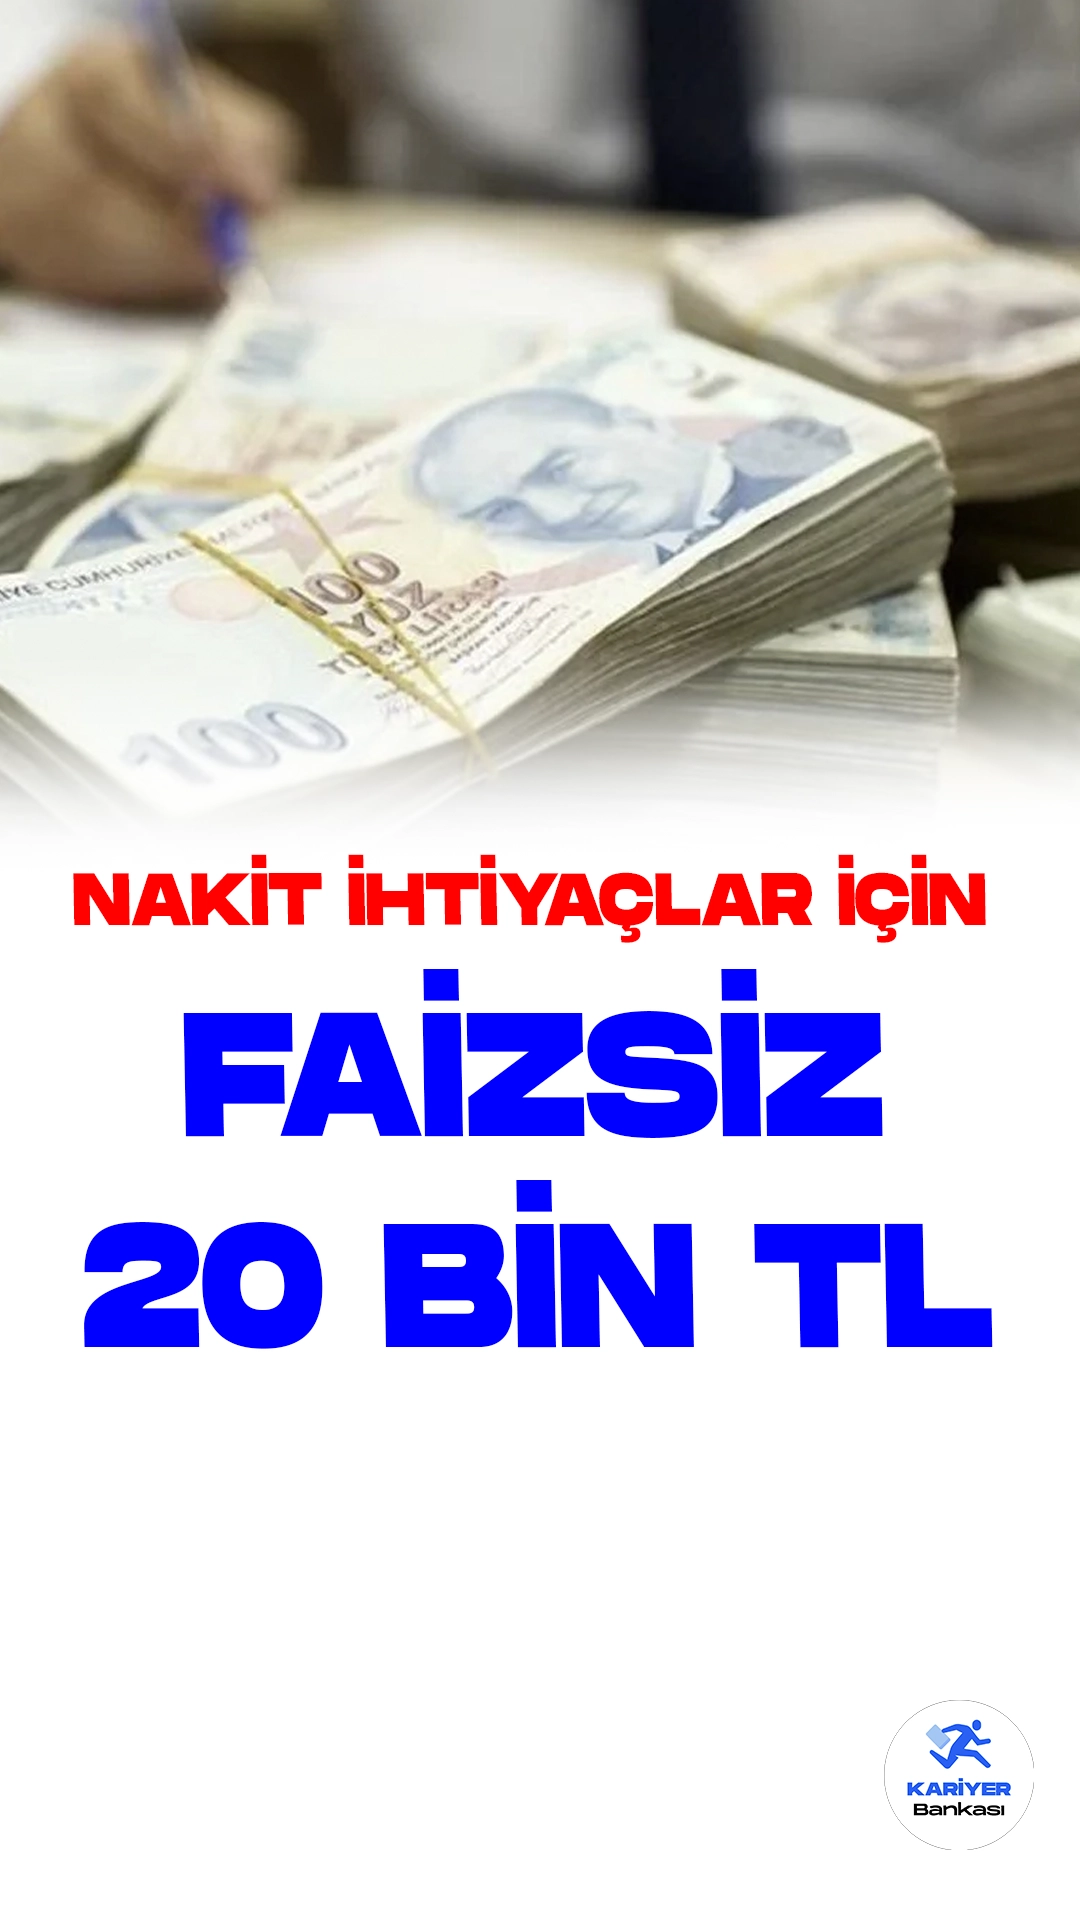 İş Bankası'ndan 20 Bin TL Faizsiz Taksitli Nakit Avans Kampanyası. Türkiye İş Bankası acil nakit ihtiyaçlar için 20 bin TL'ye kadar faizsiz taksitli nakit avans kampanyası sunuyor. Banka resmi sayfasından yayımlanan kampanya duyurusuna göre, başvurular 30 Eylül'de sona erecek. Faizsiz 20 Bin TL Nakit Avans kampanyasından faydalanmak isteyenlerin, Bankanın belirlediği şartları sağlaması gerekmektedir.